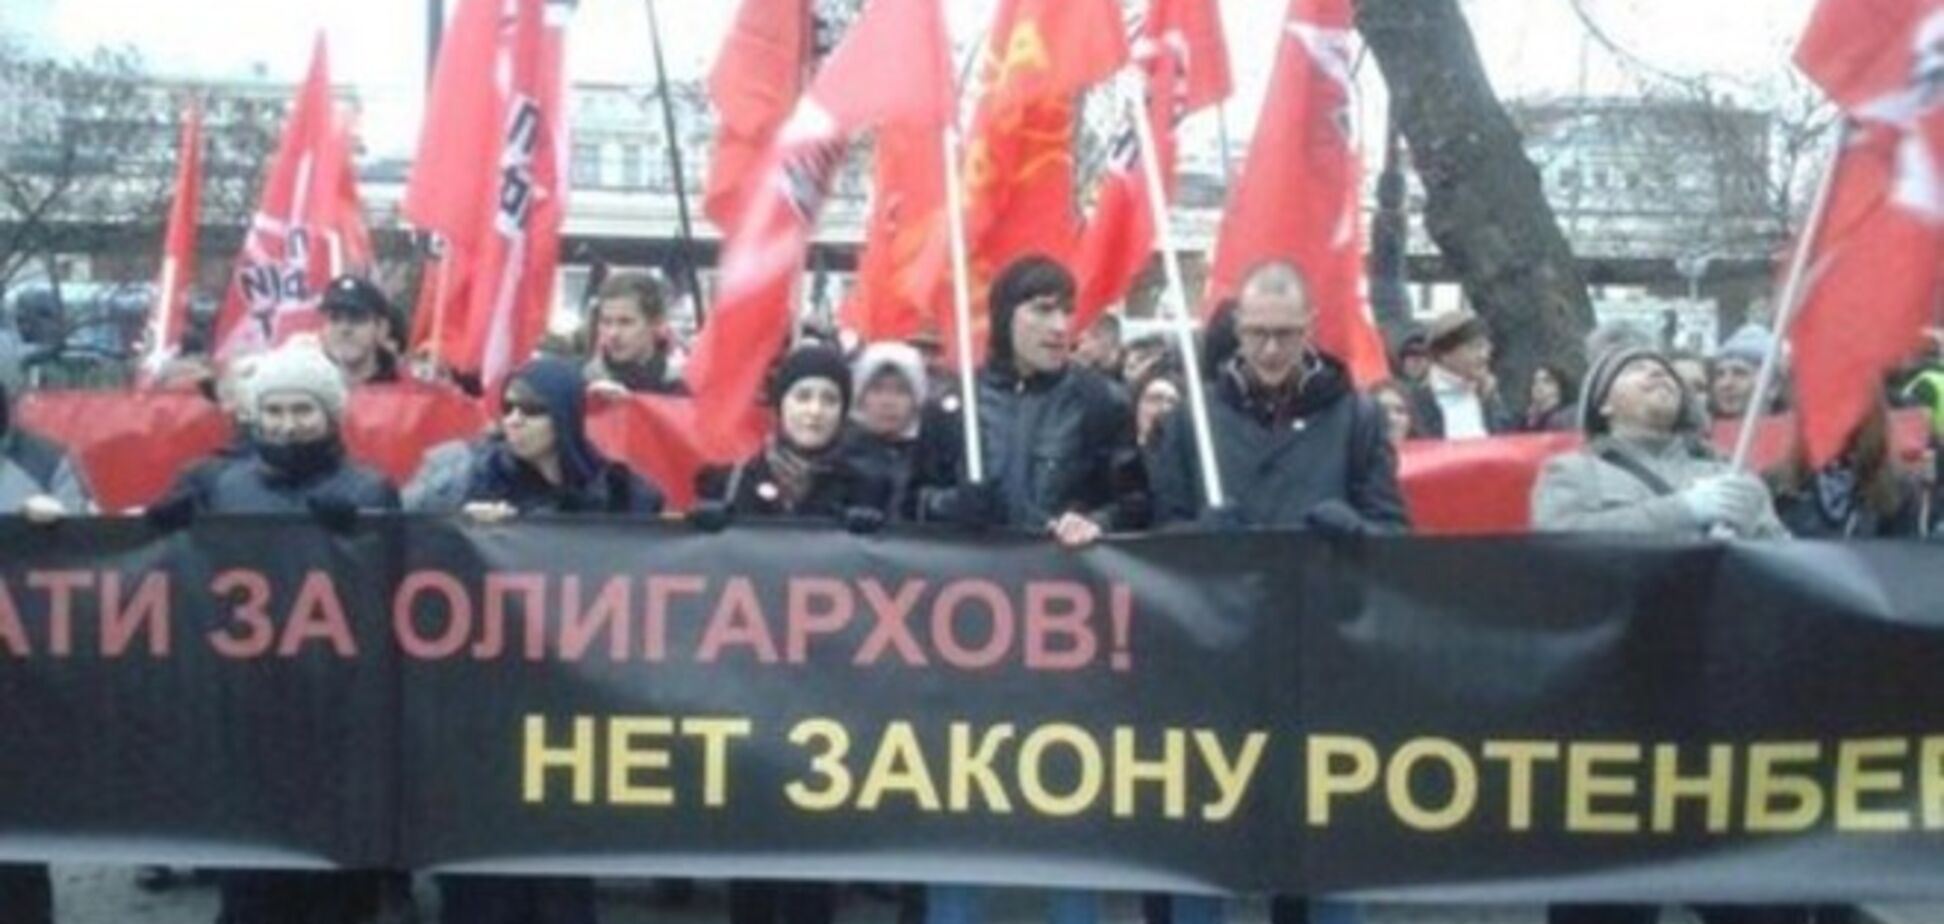 В Москве устроили антиолигархическое шествие: опубликовано видео